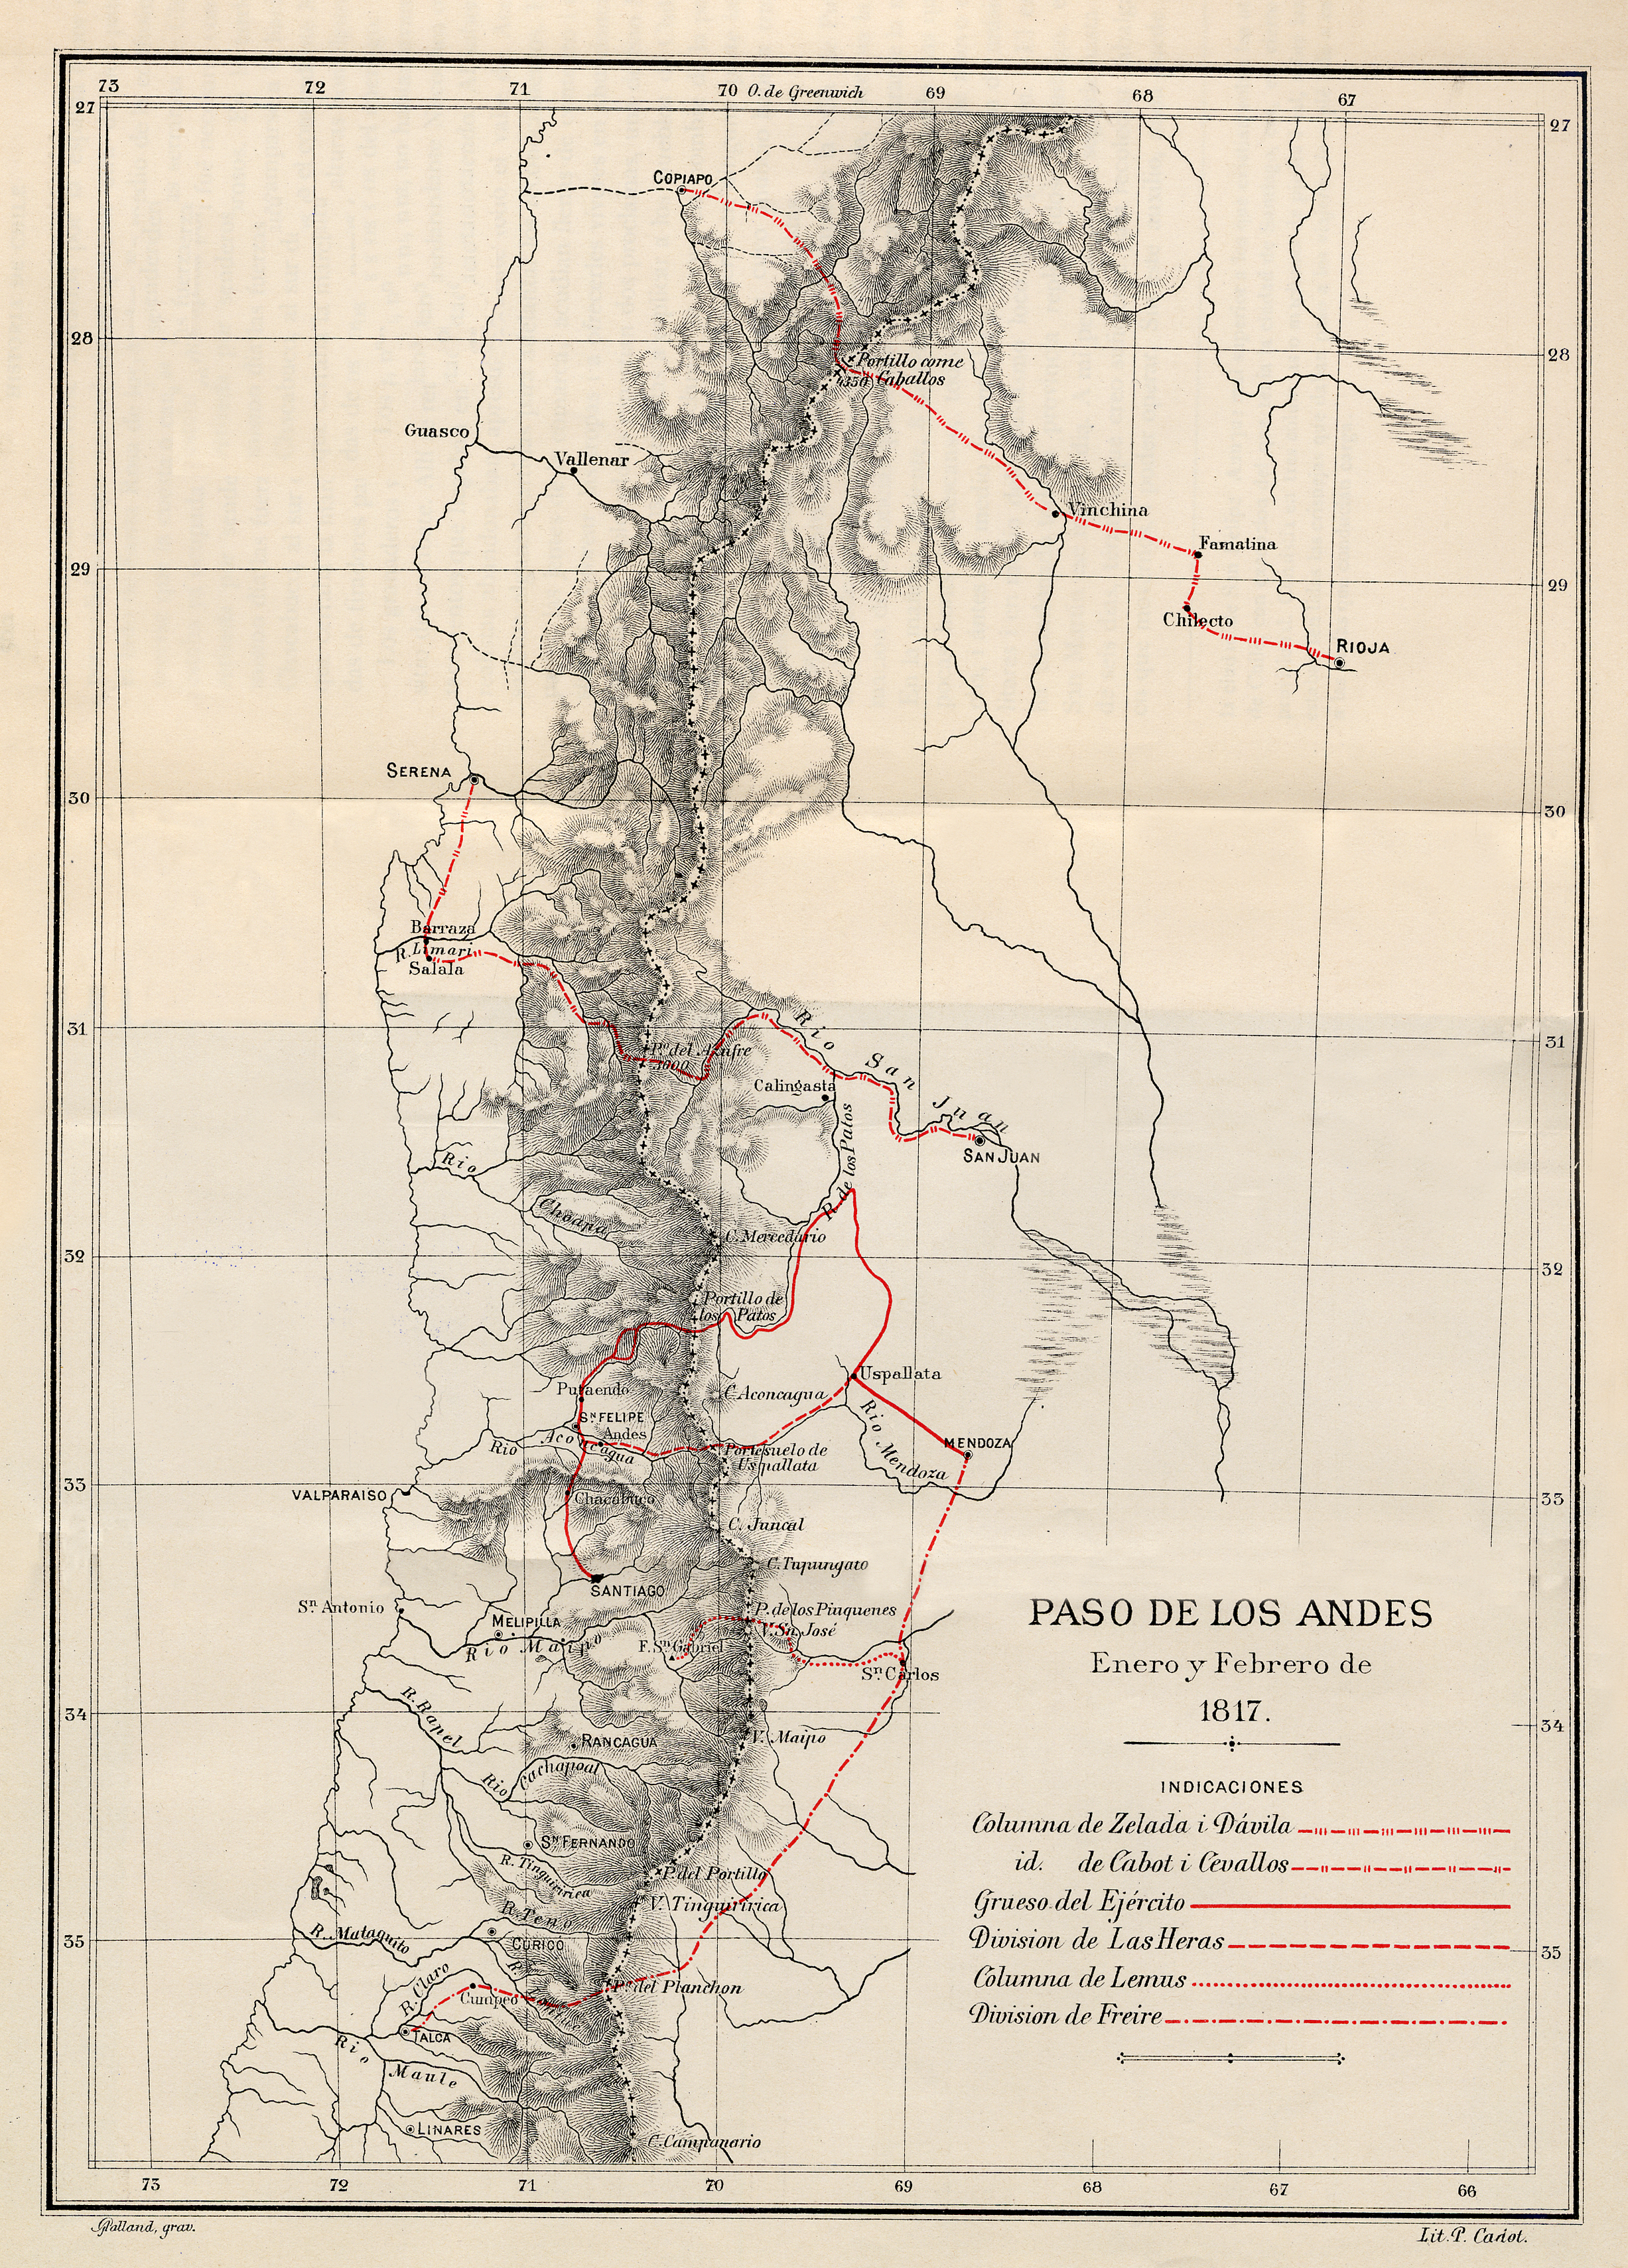 Paso de Los Andes, enero y febrero de 1817